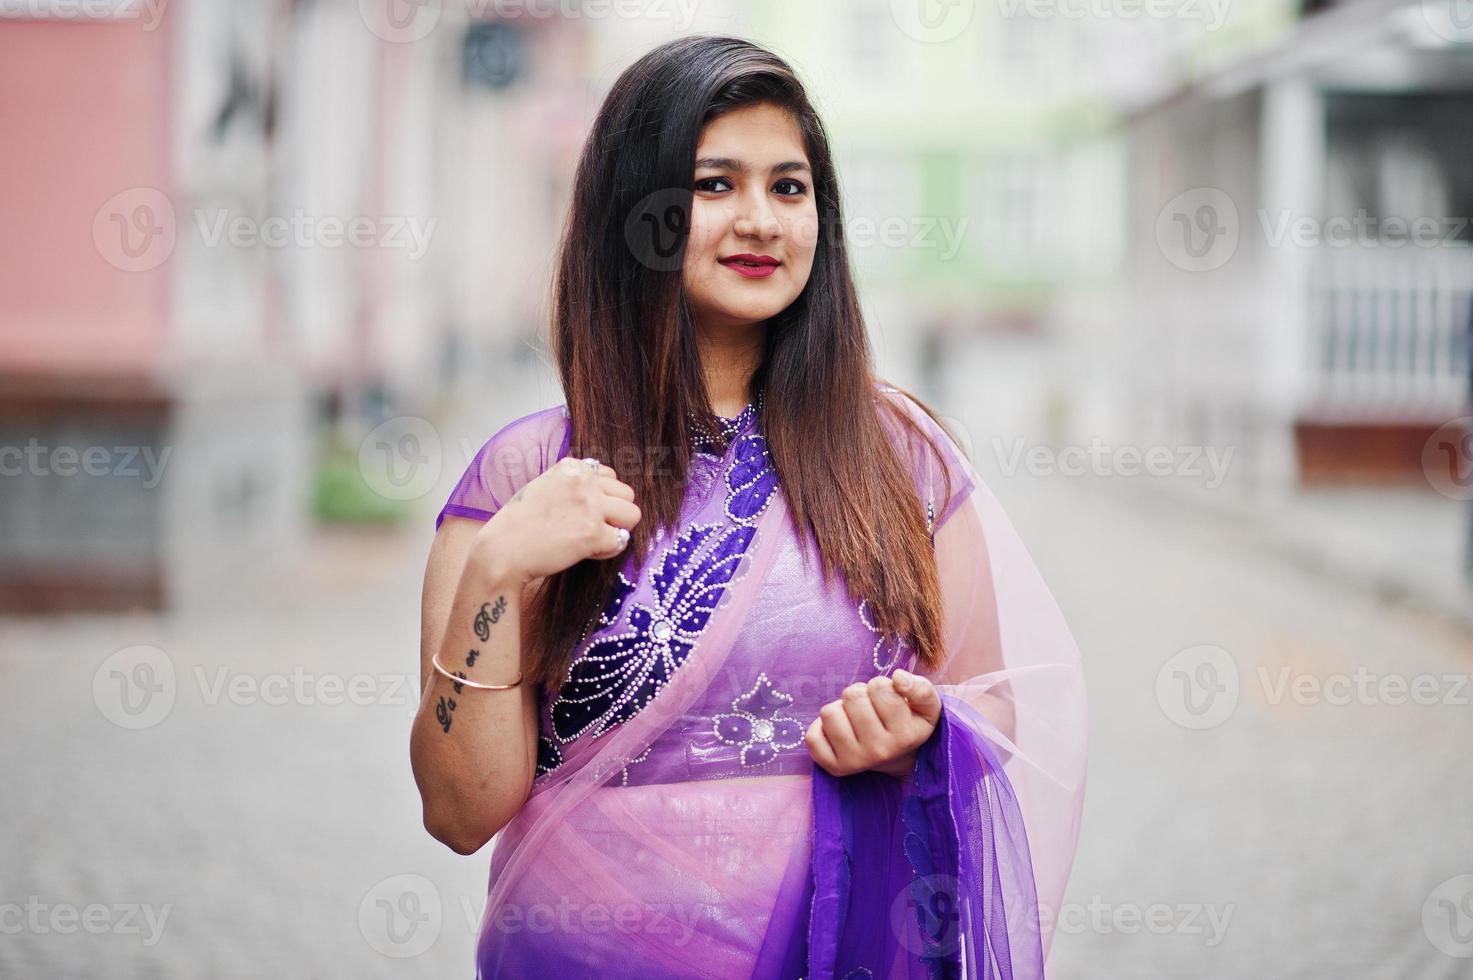 garota hindu indiana no saree violeta tradicional posou na rua. foto